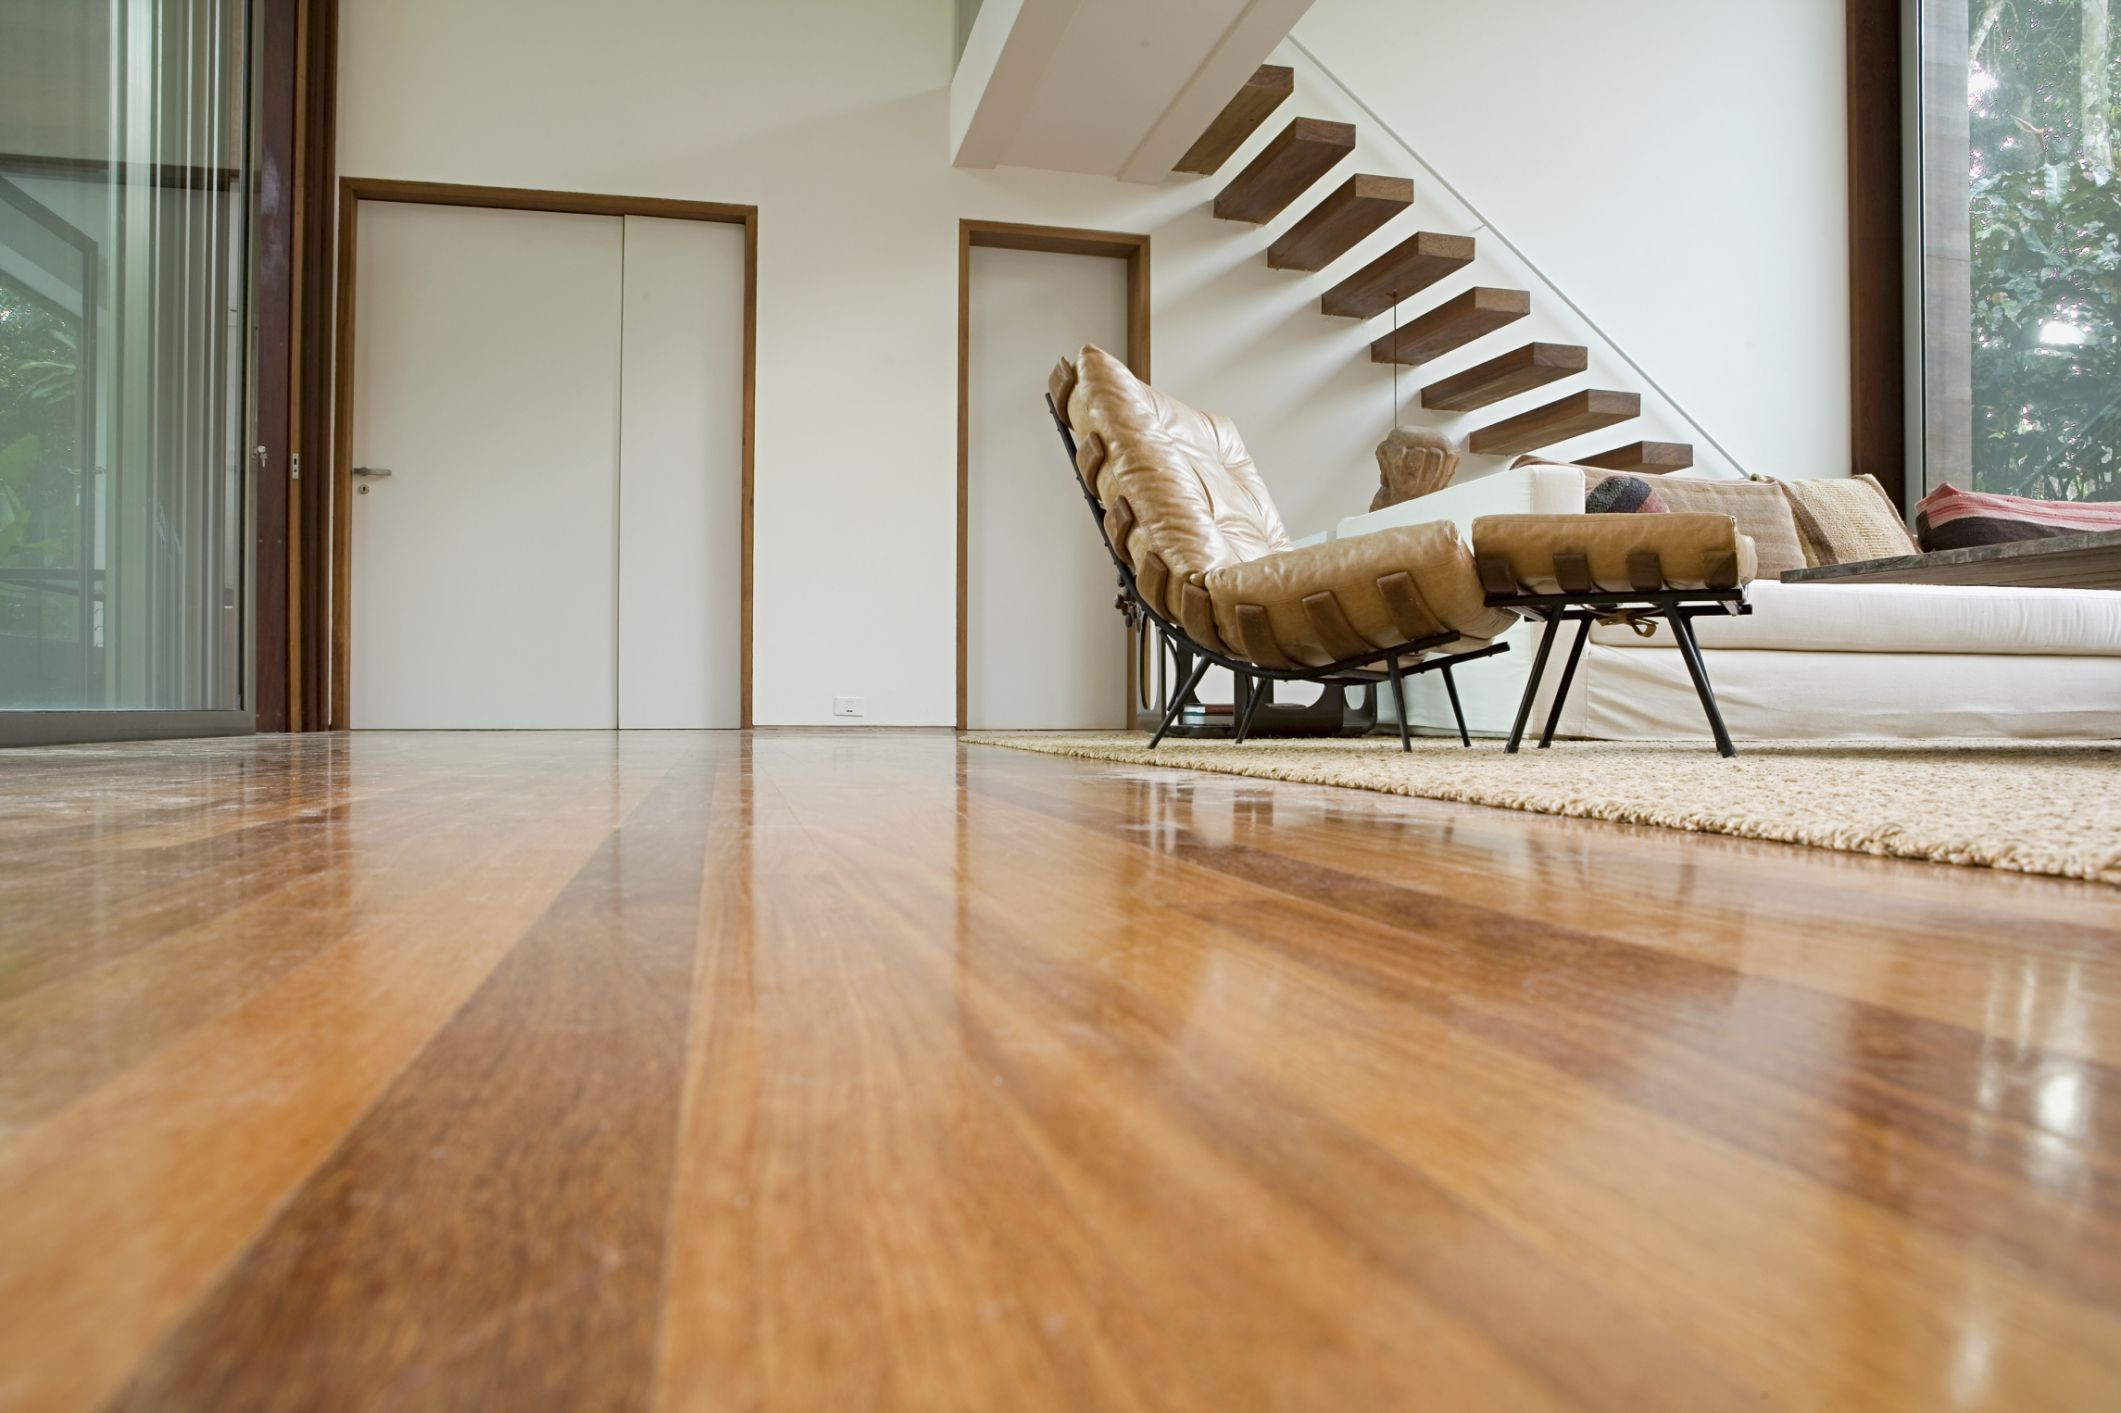 red oak hardwood flooring reviews of engineered wood flooring vs solid wood flooring for 200571260 001 highres 56a49dec5f9b58b7d0d7dc1e